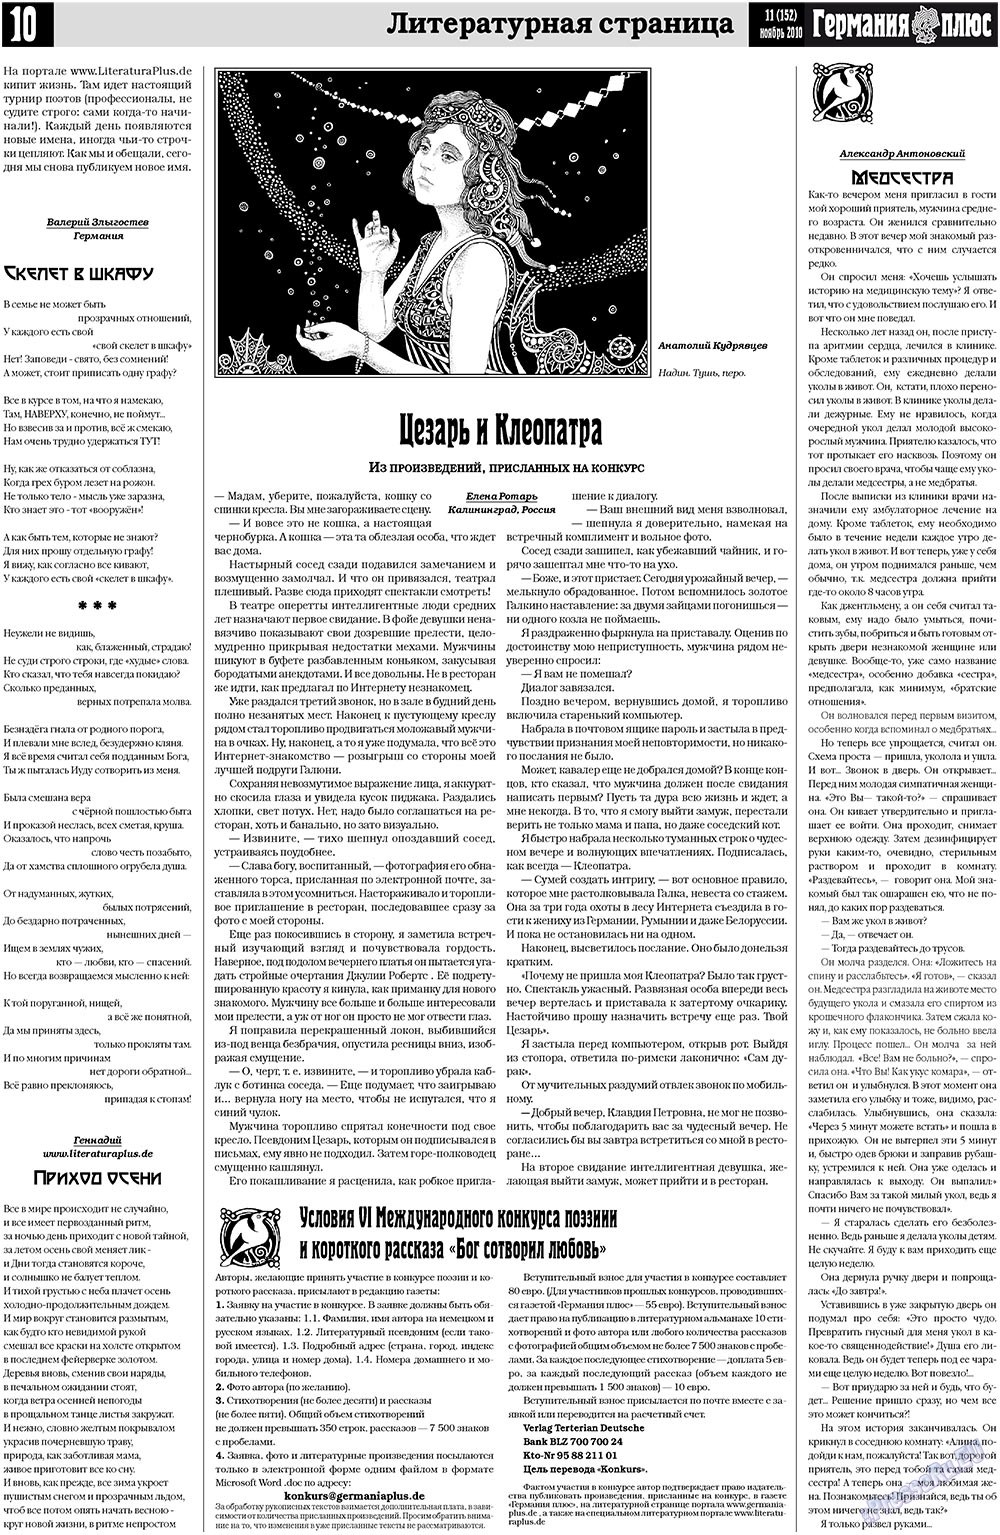 Германия плюс, газета. 2010 №11 стр.10